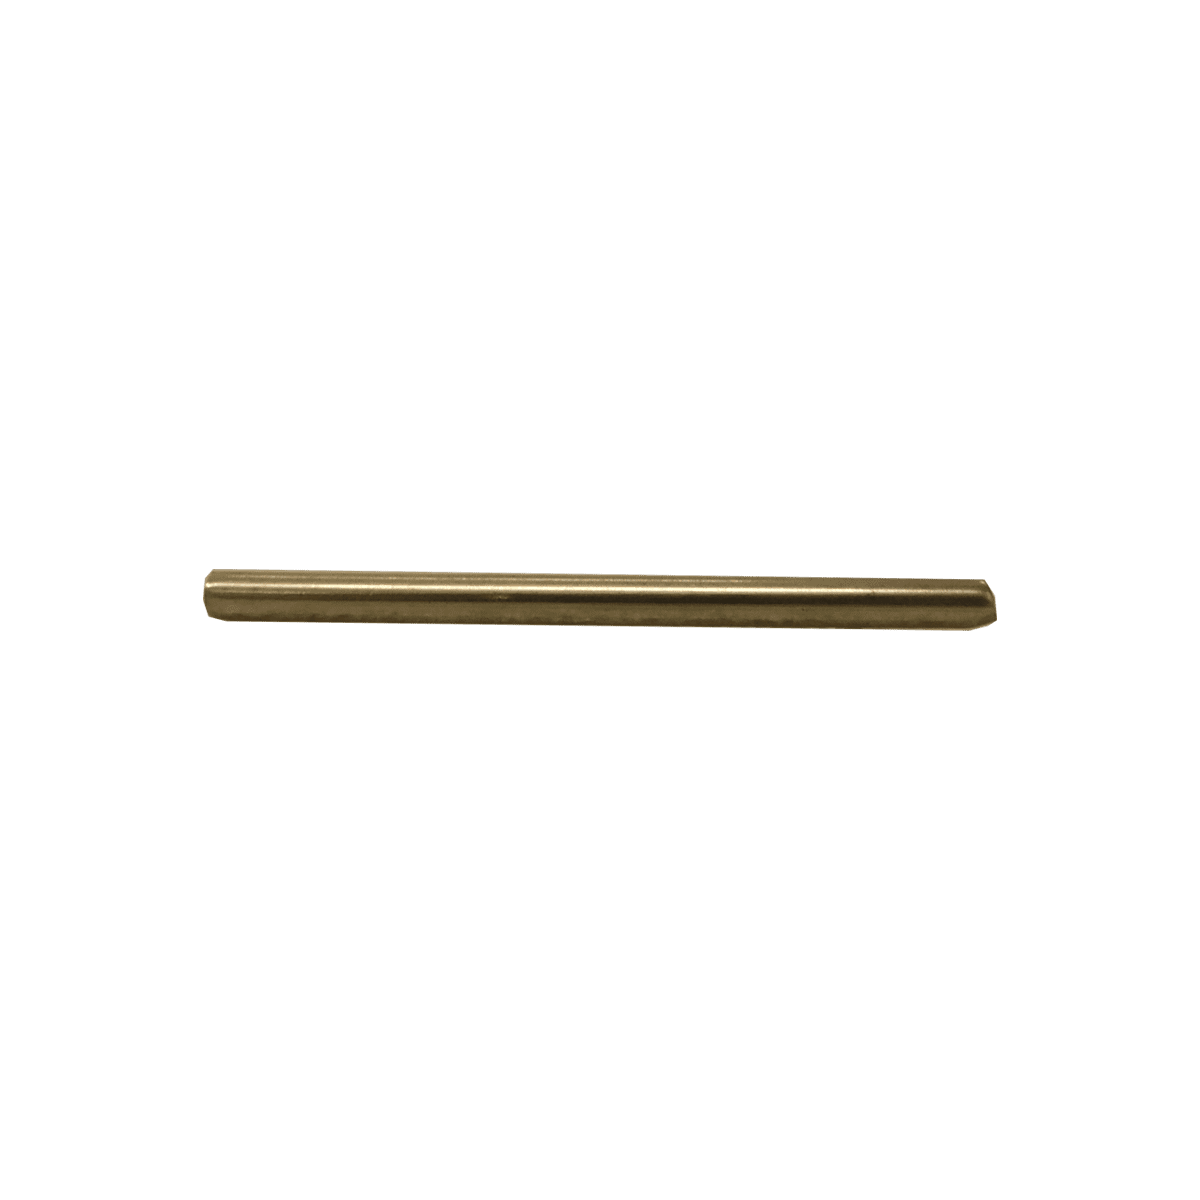 Agitator pin below (62 mm)